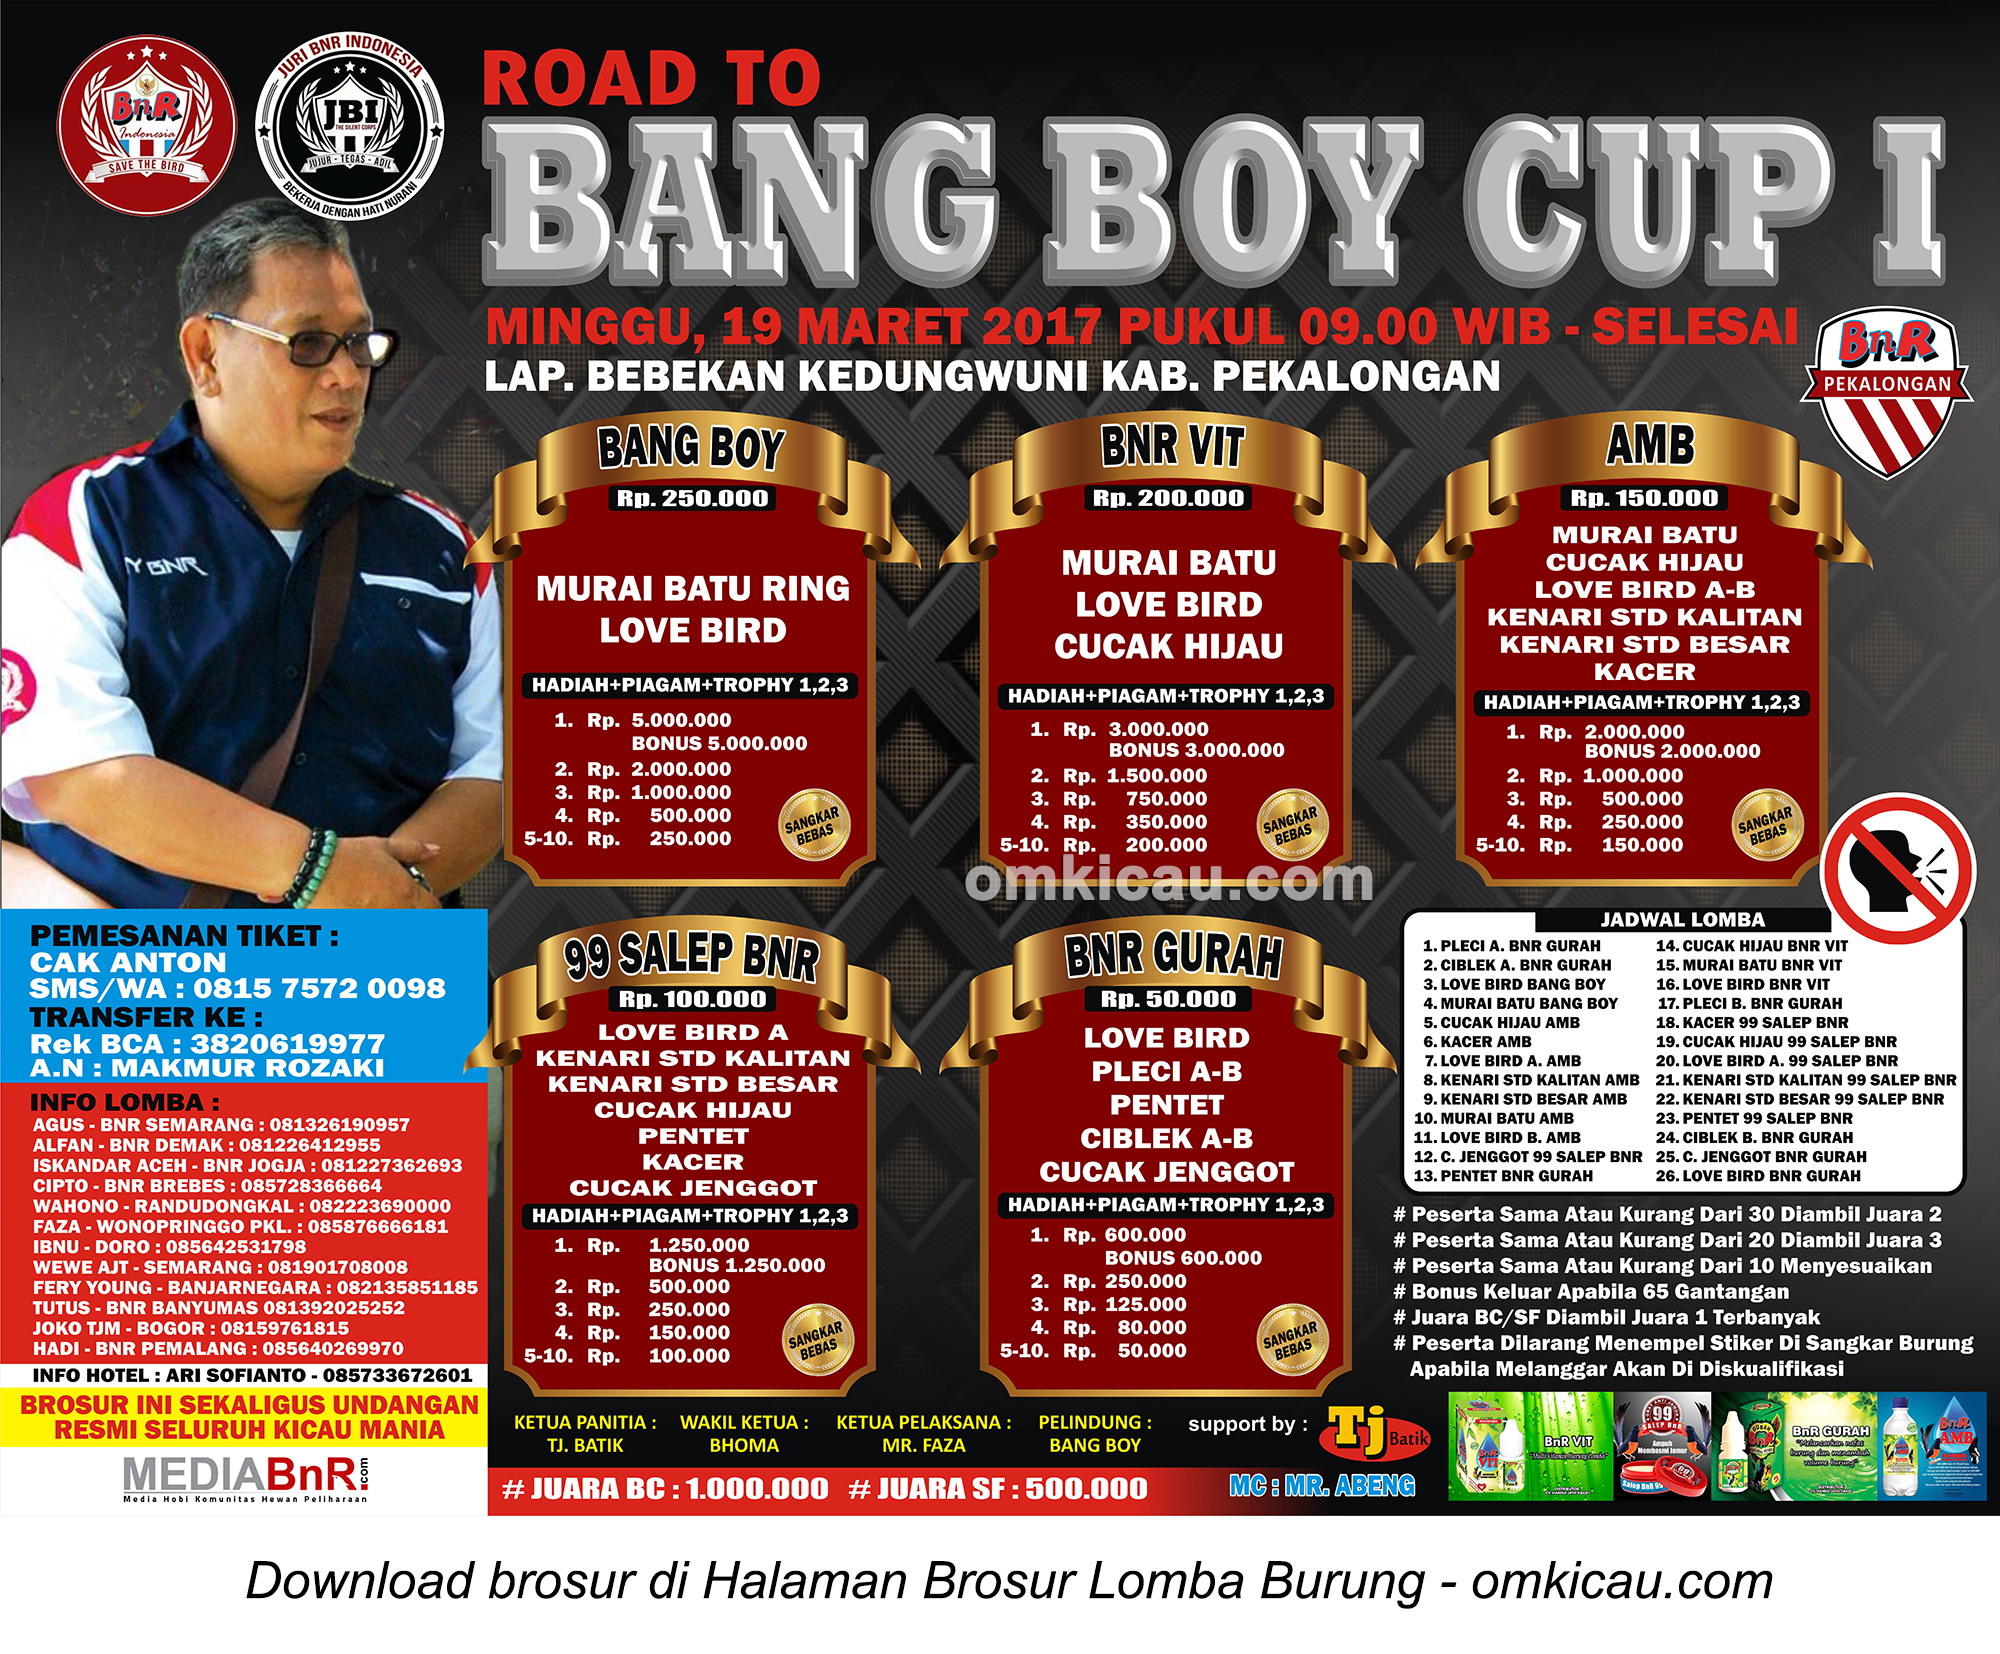 Brosur Lomba Burung Berkicau Road to Bang Boy Cup I, Pekalongan, 19 Maret 2017